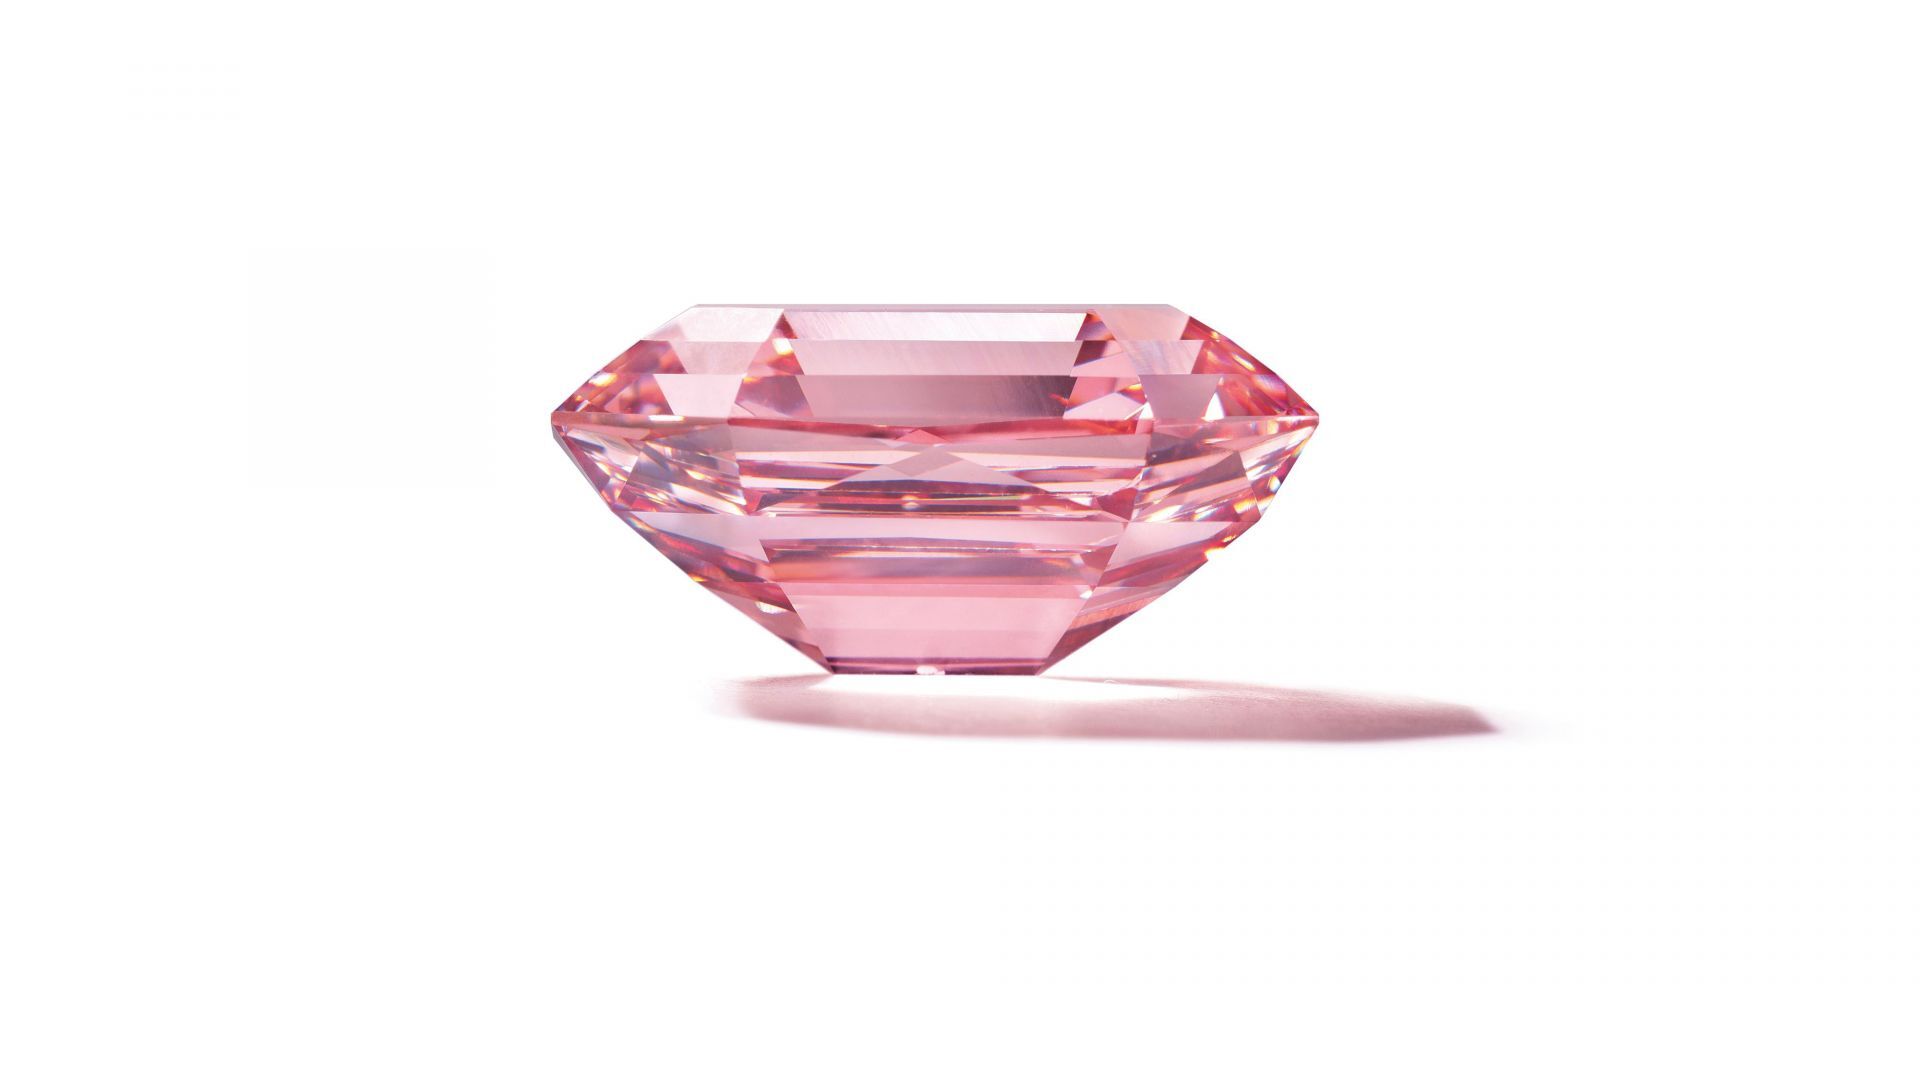 Viên kim cương hồng Sakura được bán đấu giá 38 triệu USD